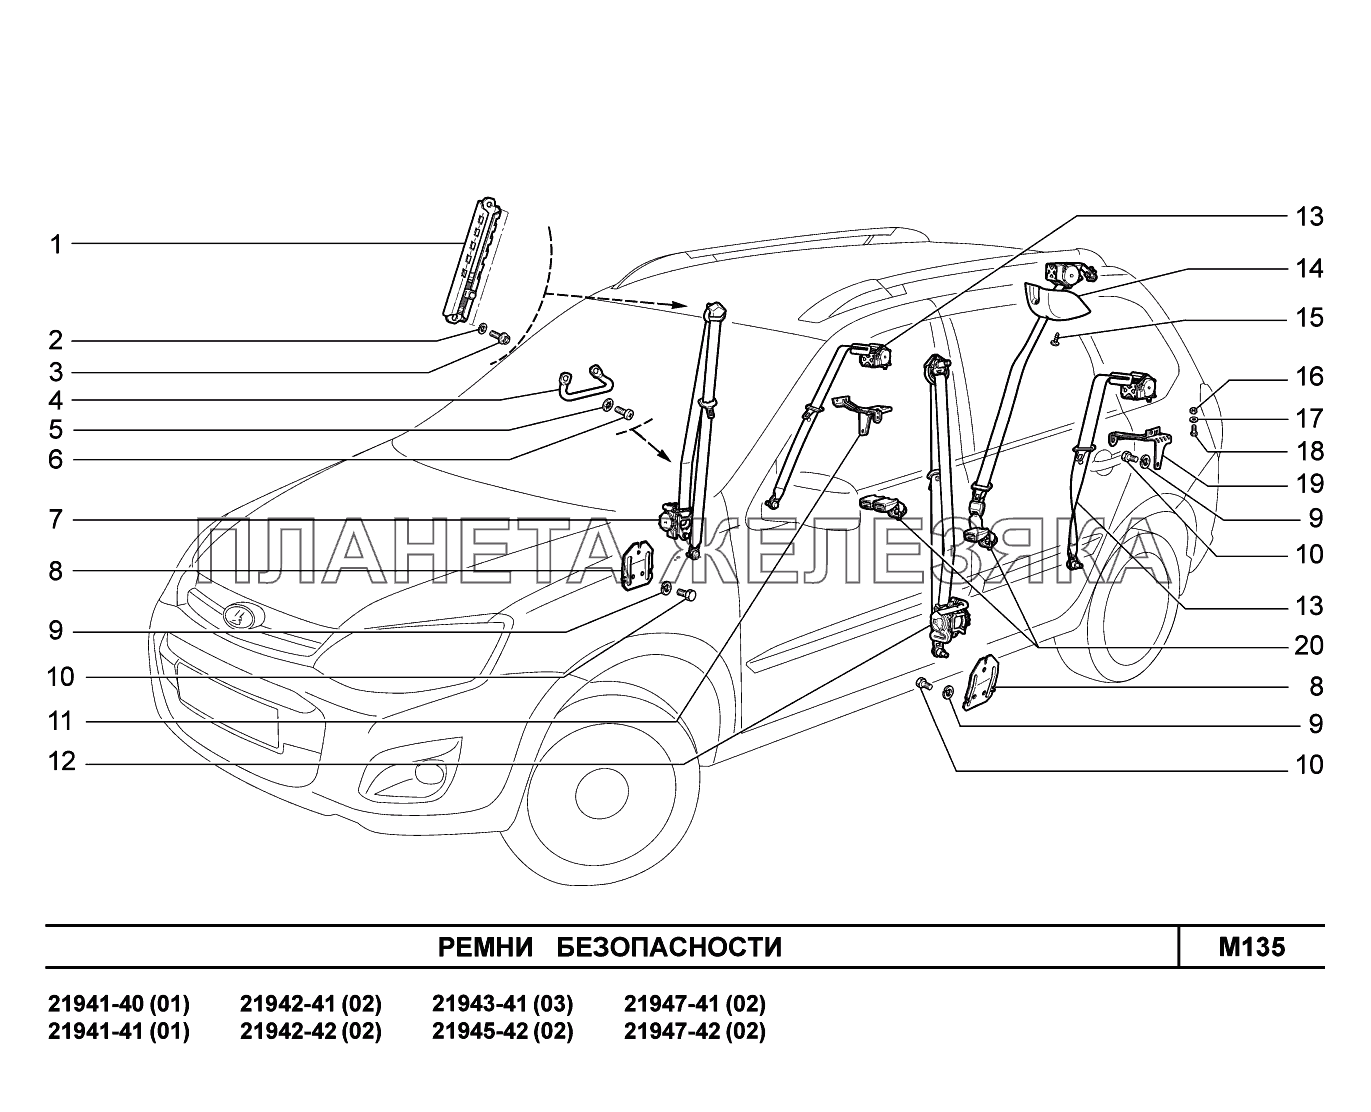 M135. Ремни безопасности Lada Kalina New 2194